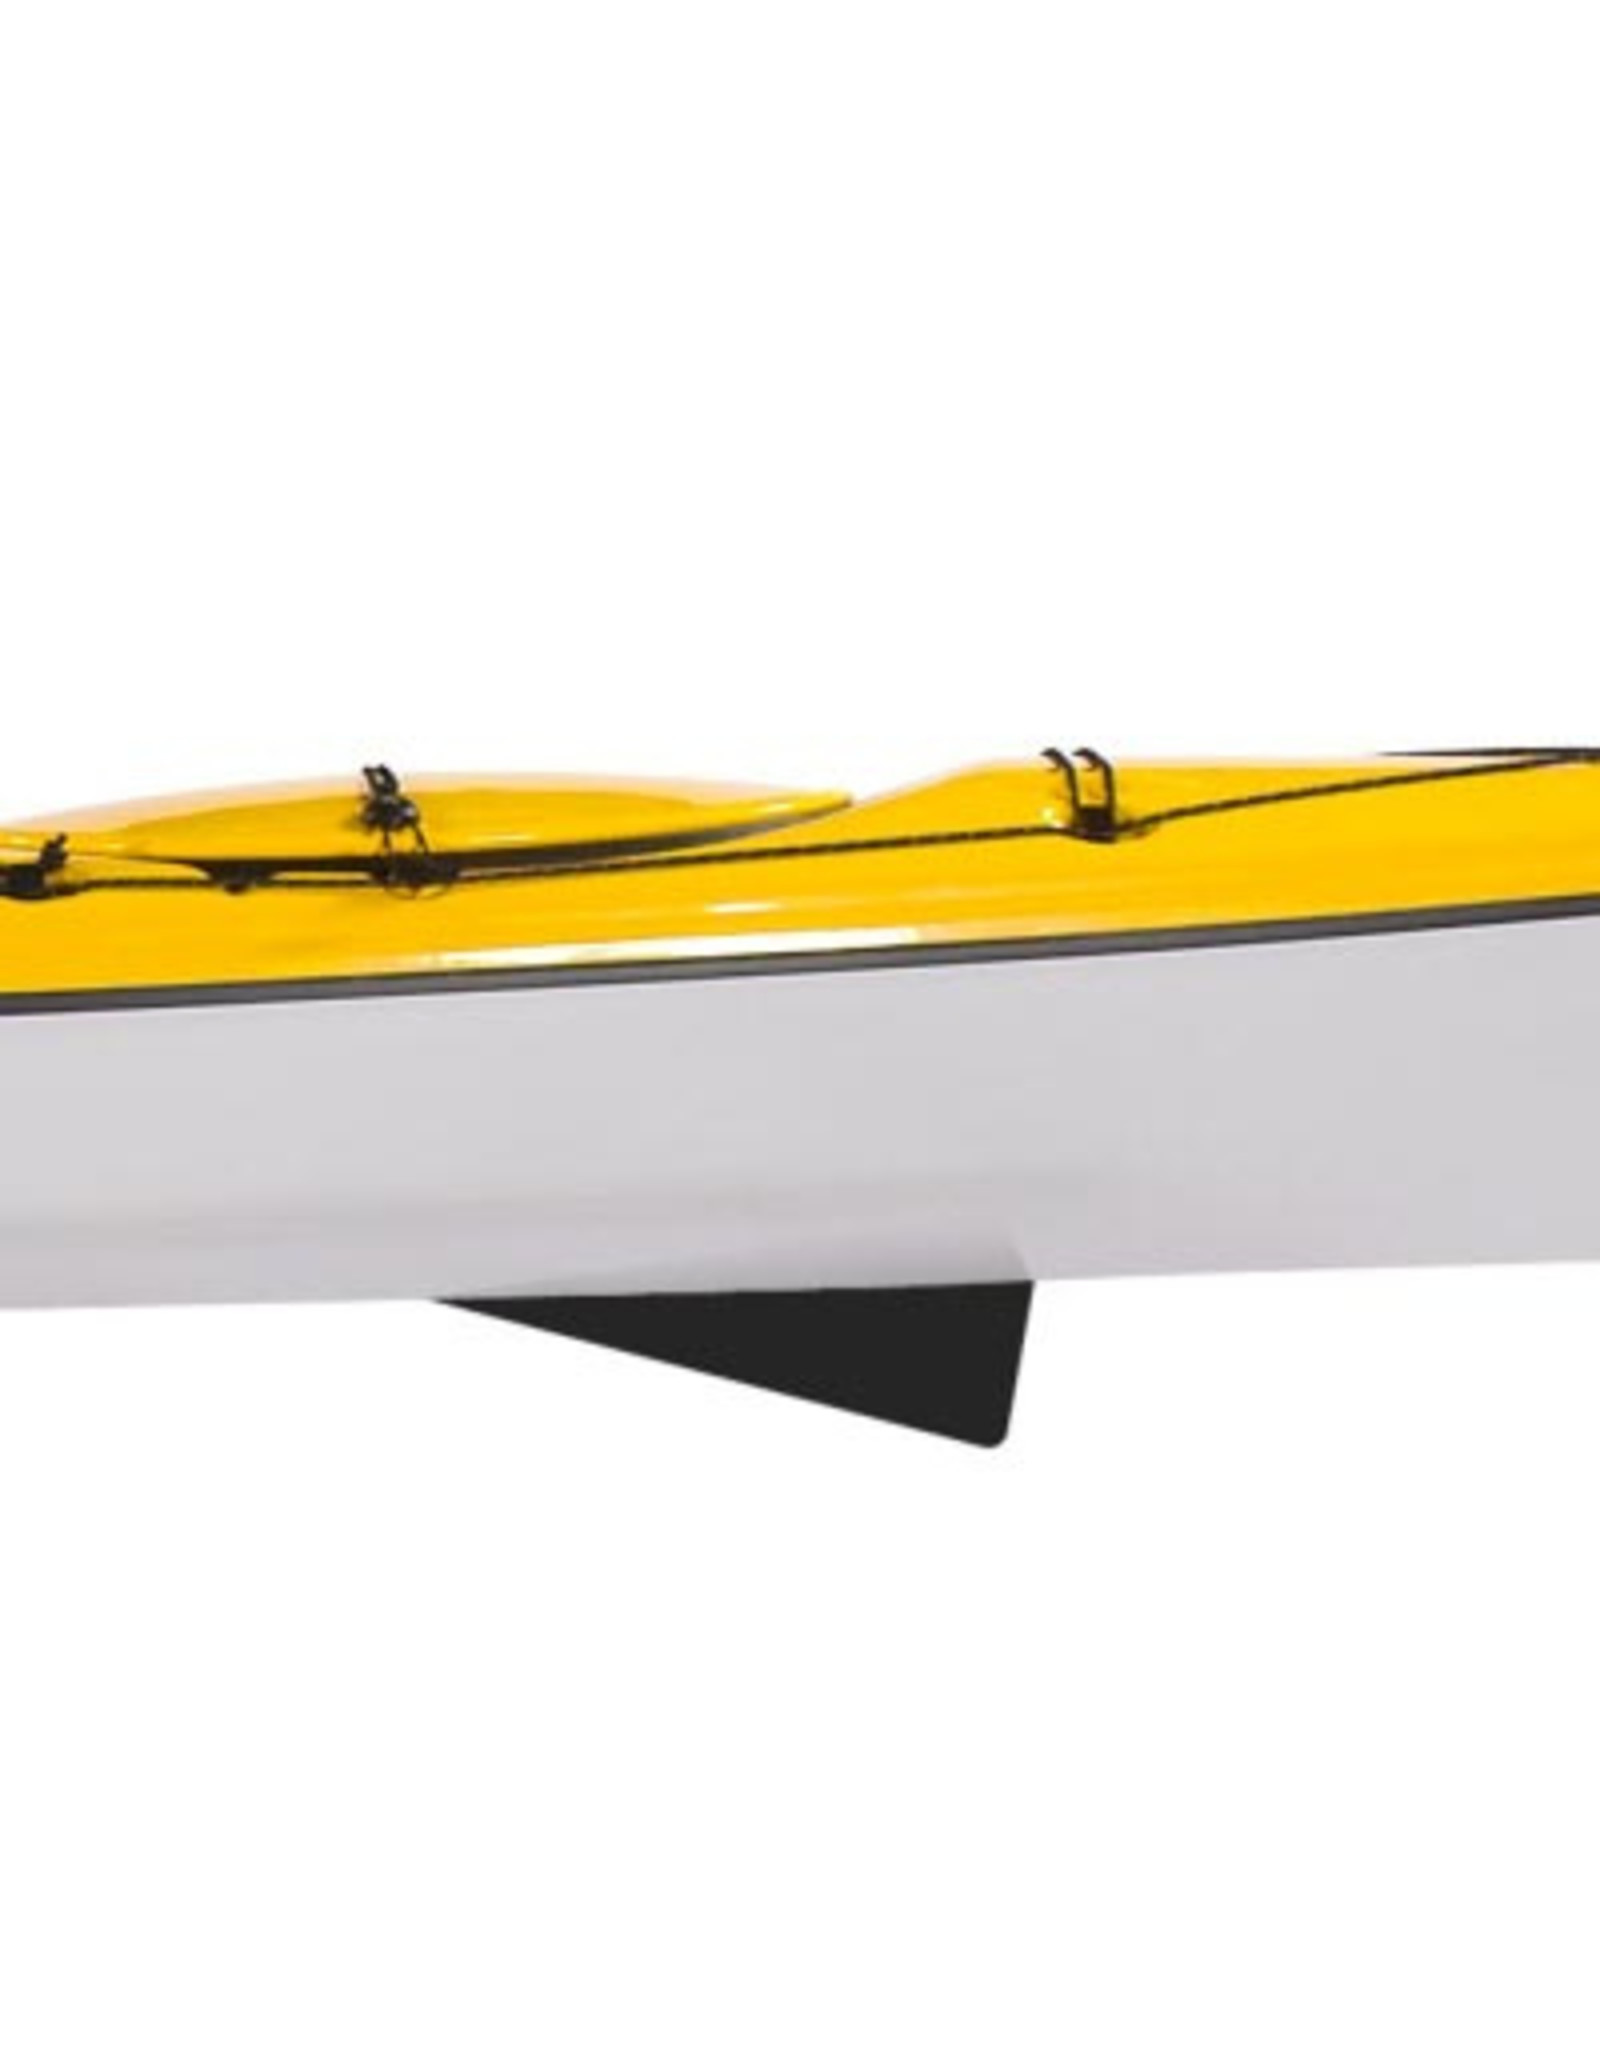 Delta Delta kayak 15.5 GT with a skeg